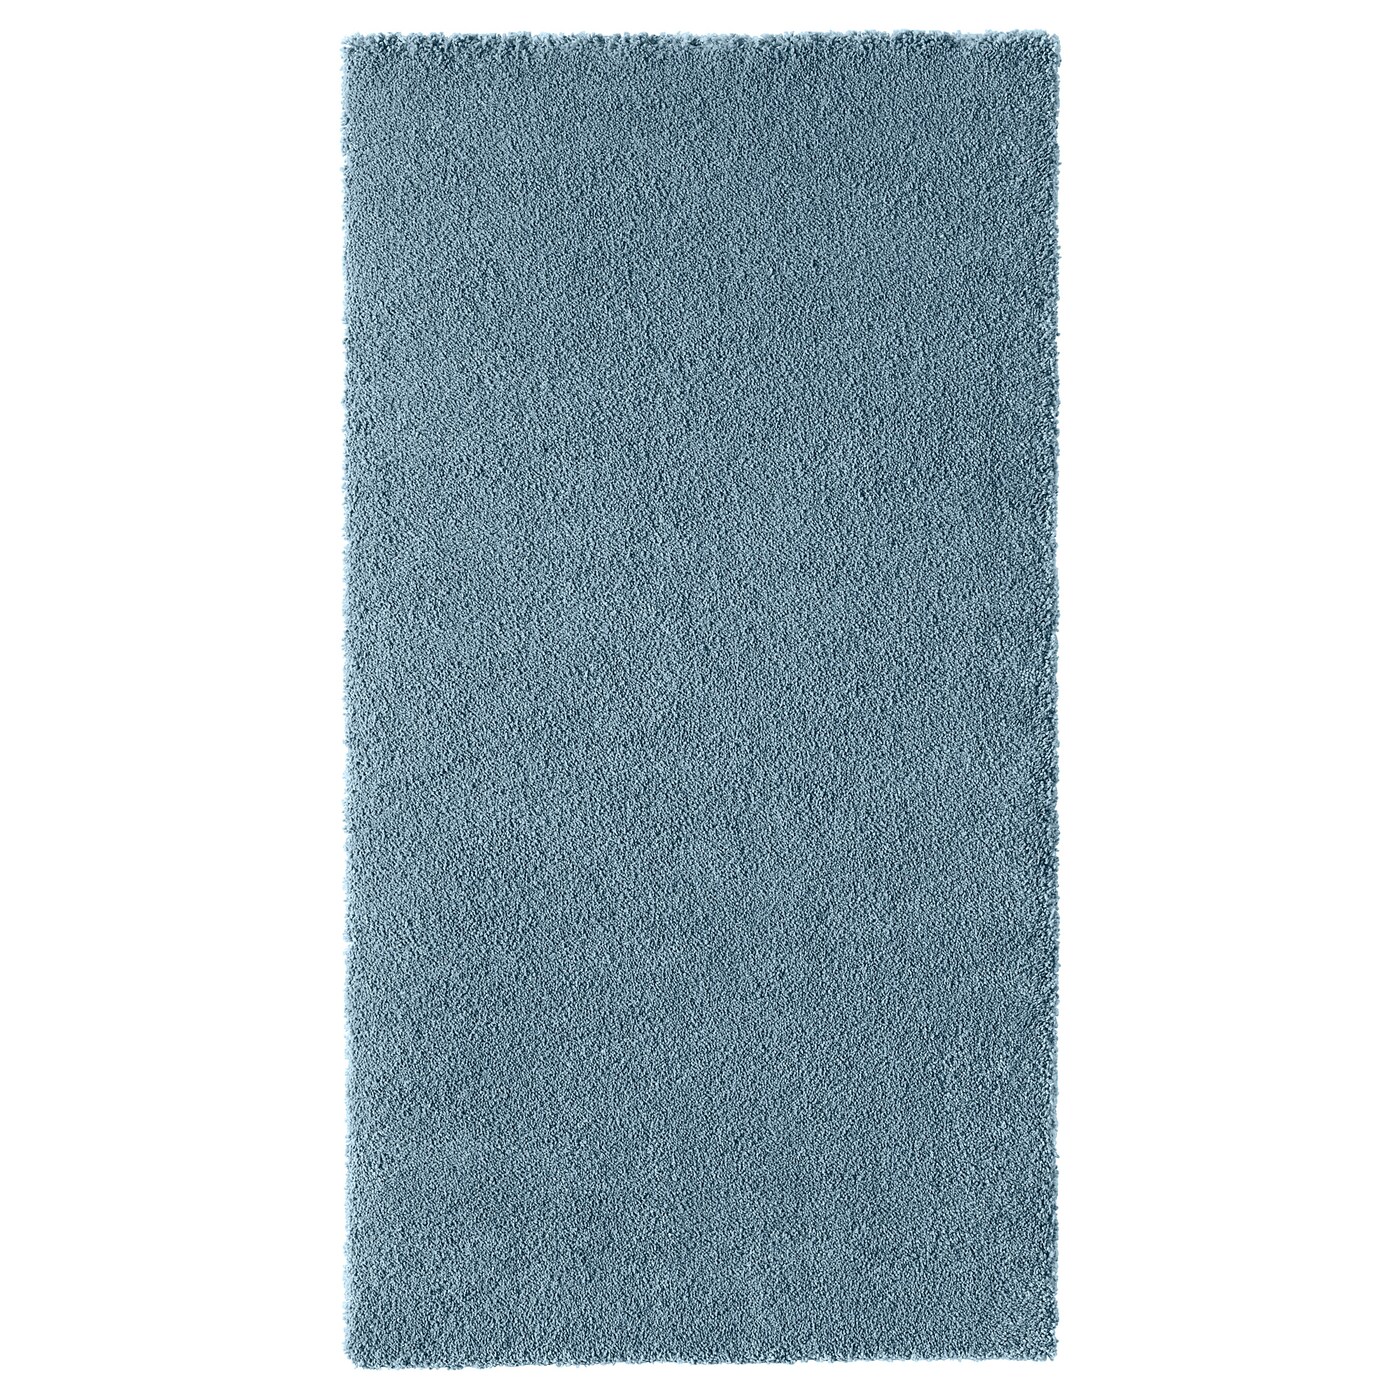 ИКЕА STOENSE, Ковер с коротким ворсом, 004.270.07, средний синий, 80x150 см